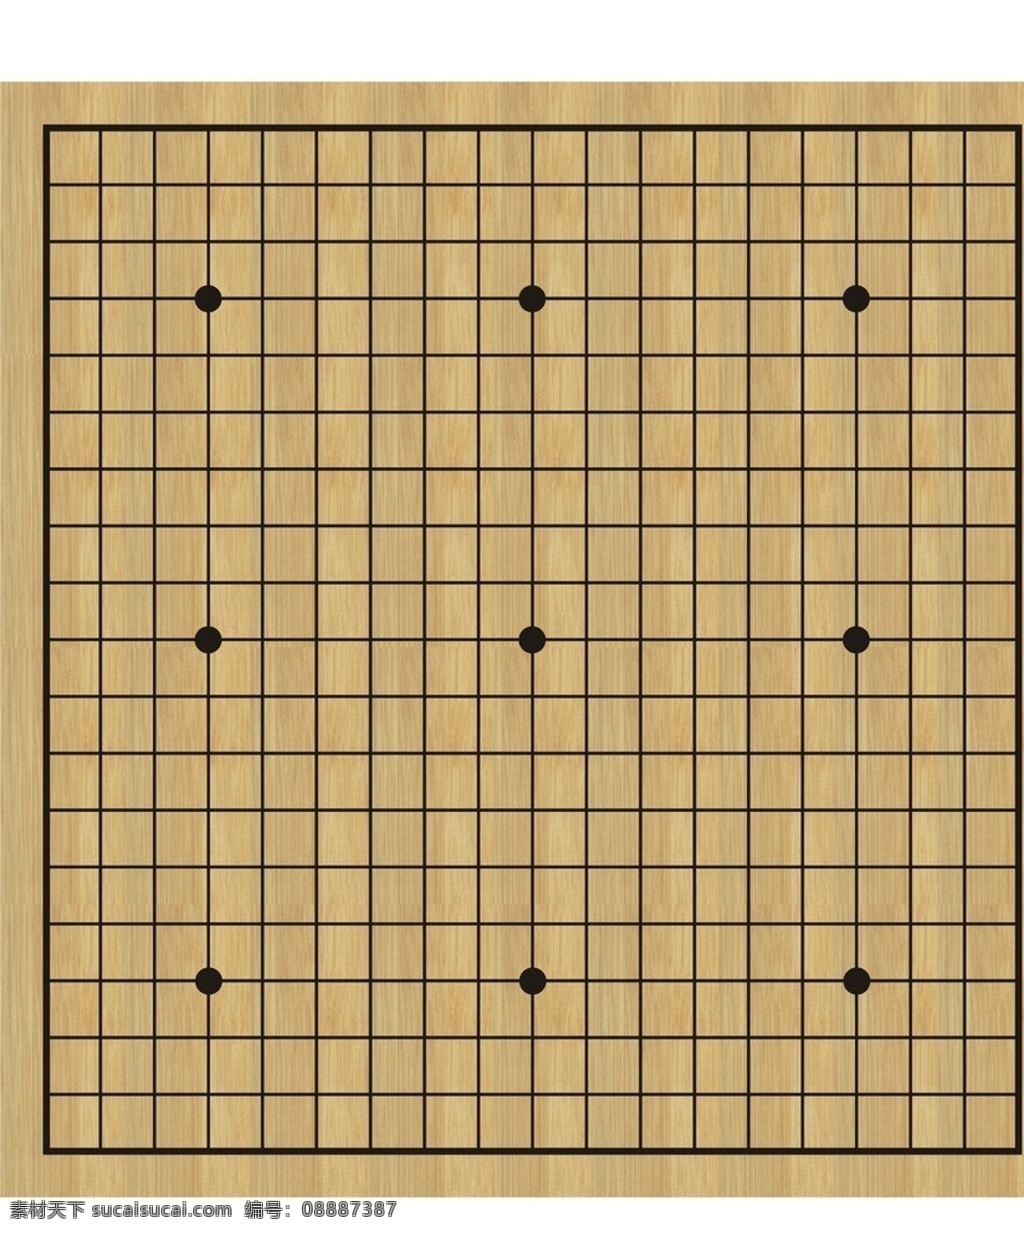 标准围棋盘 竹纹底 日式 传统文化 文化艺术 矢量